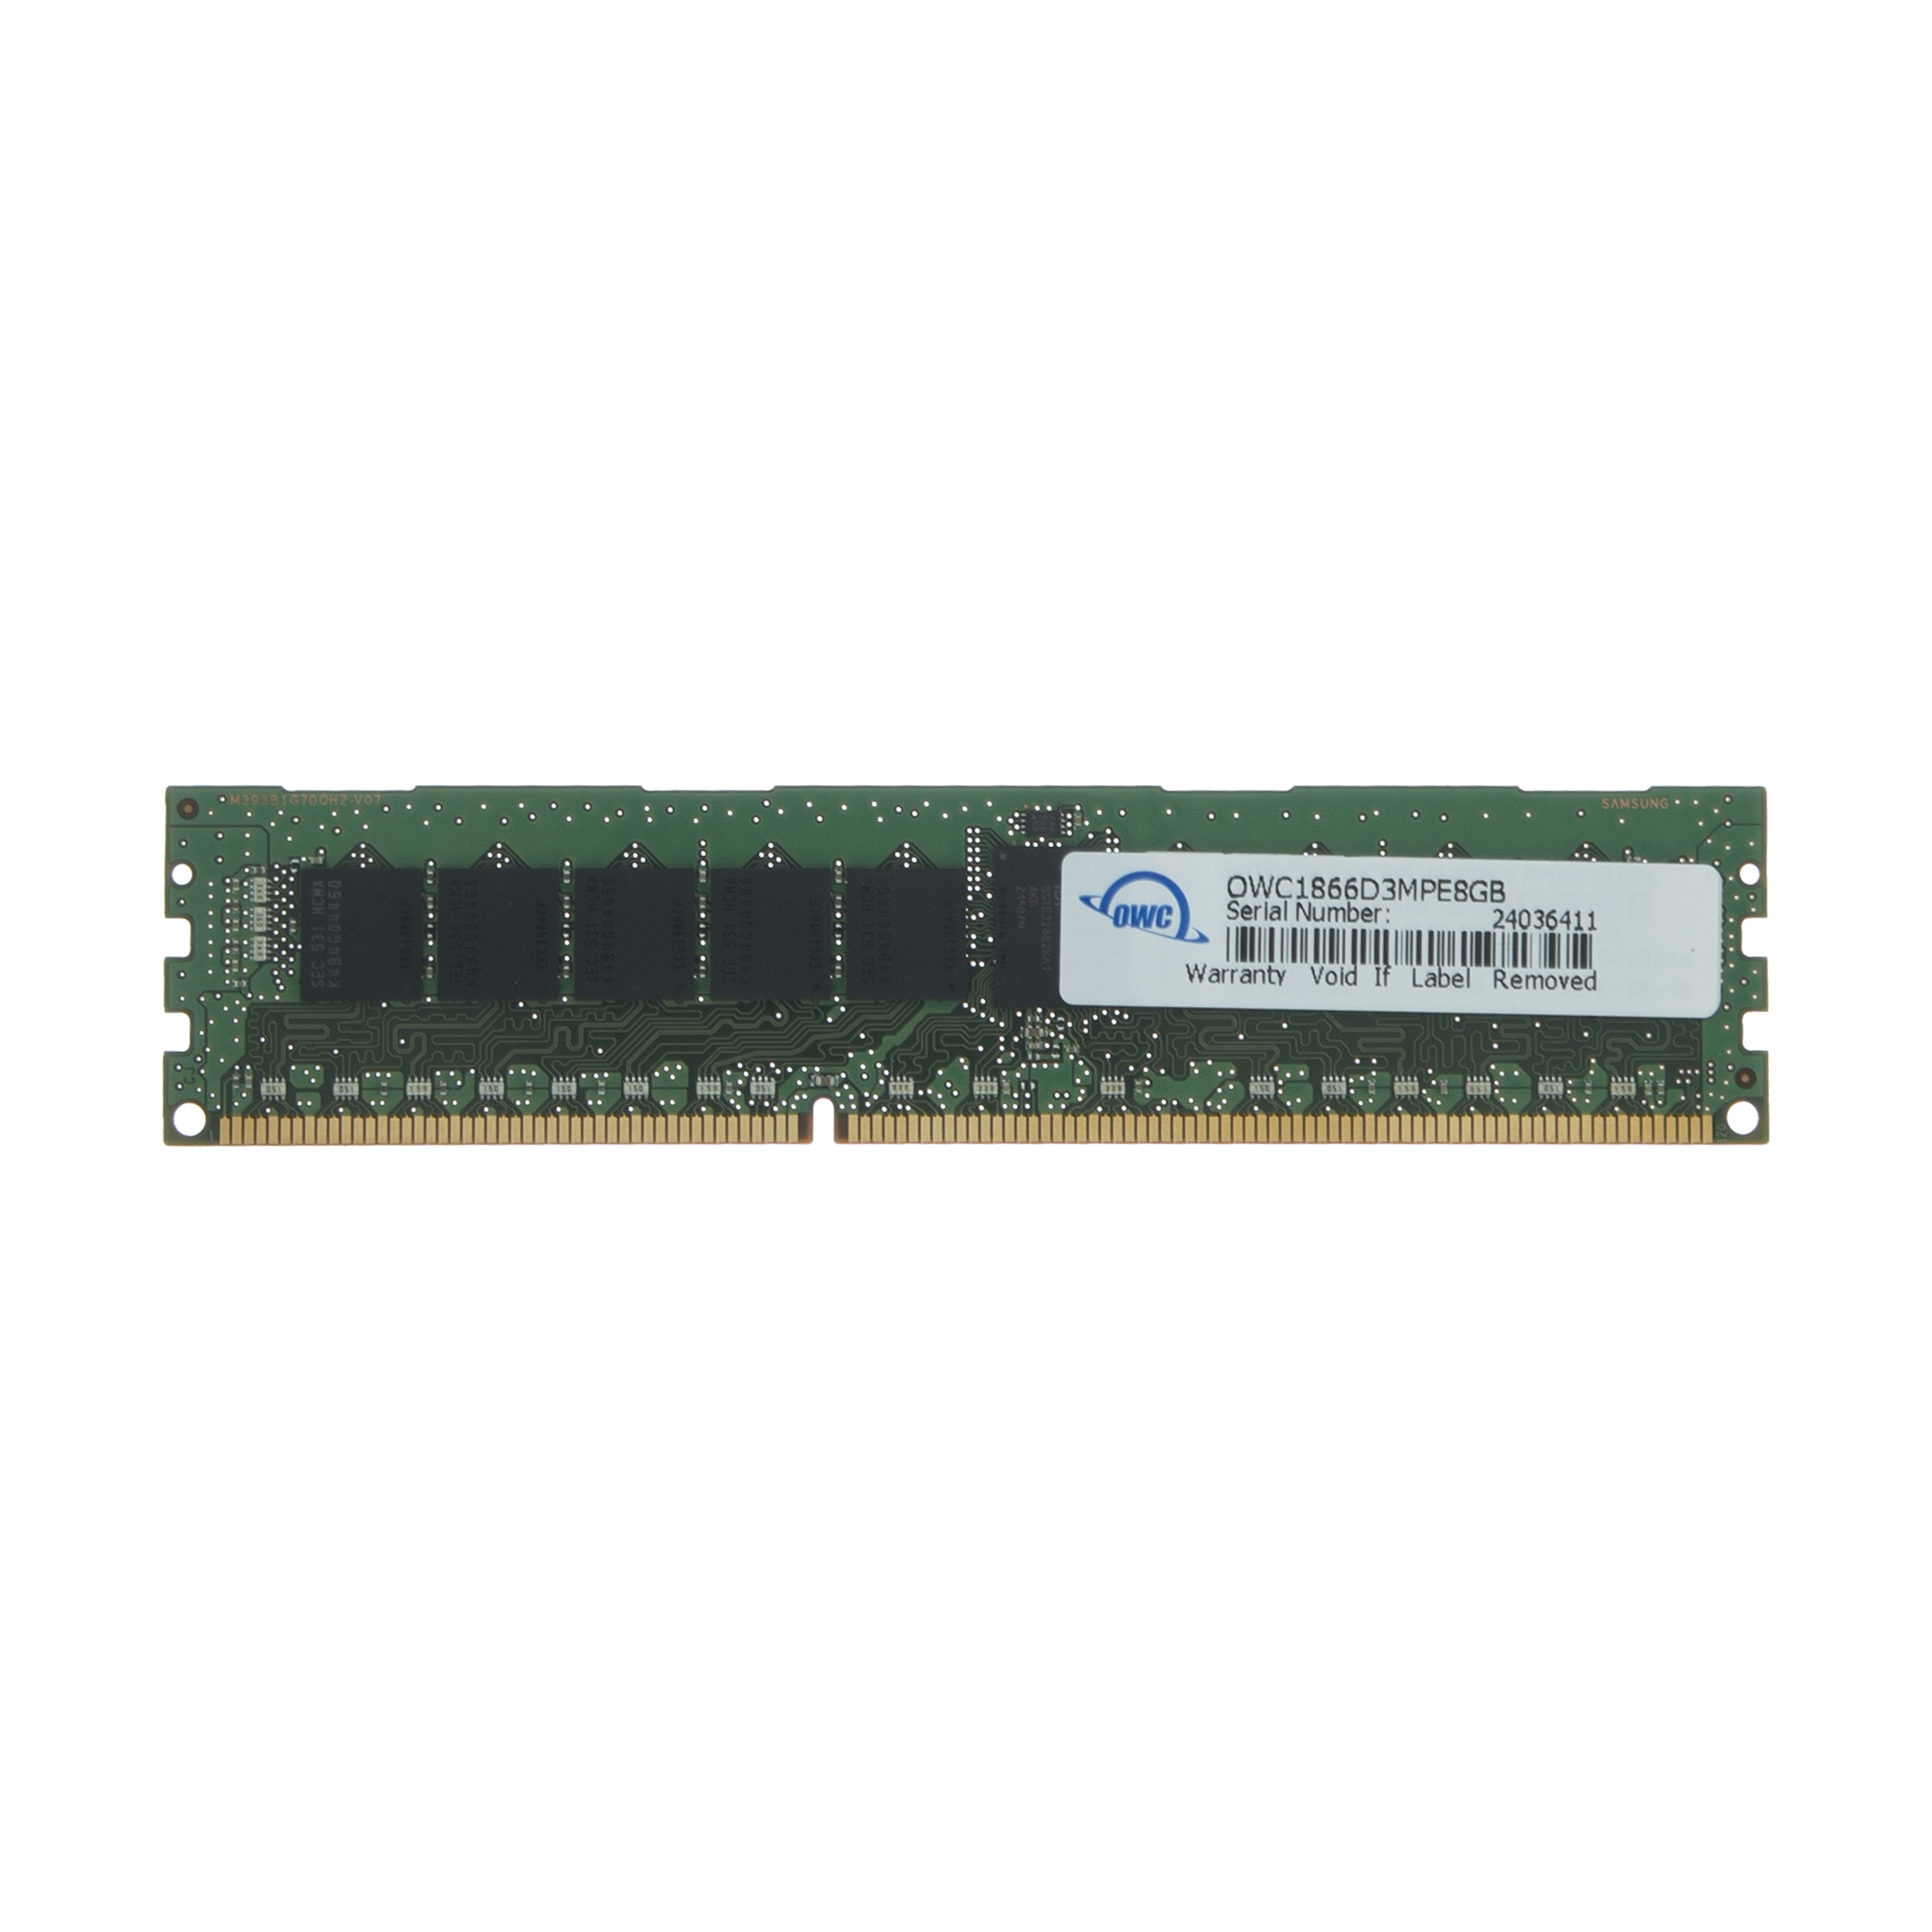 رم سرور DDR3 دو کاناله 1866 مگاهرتز CL13 اُ دبلیو سی مدل PC3-14900 ECC Registered ظرفیت 8 گیگابایت